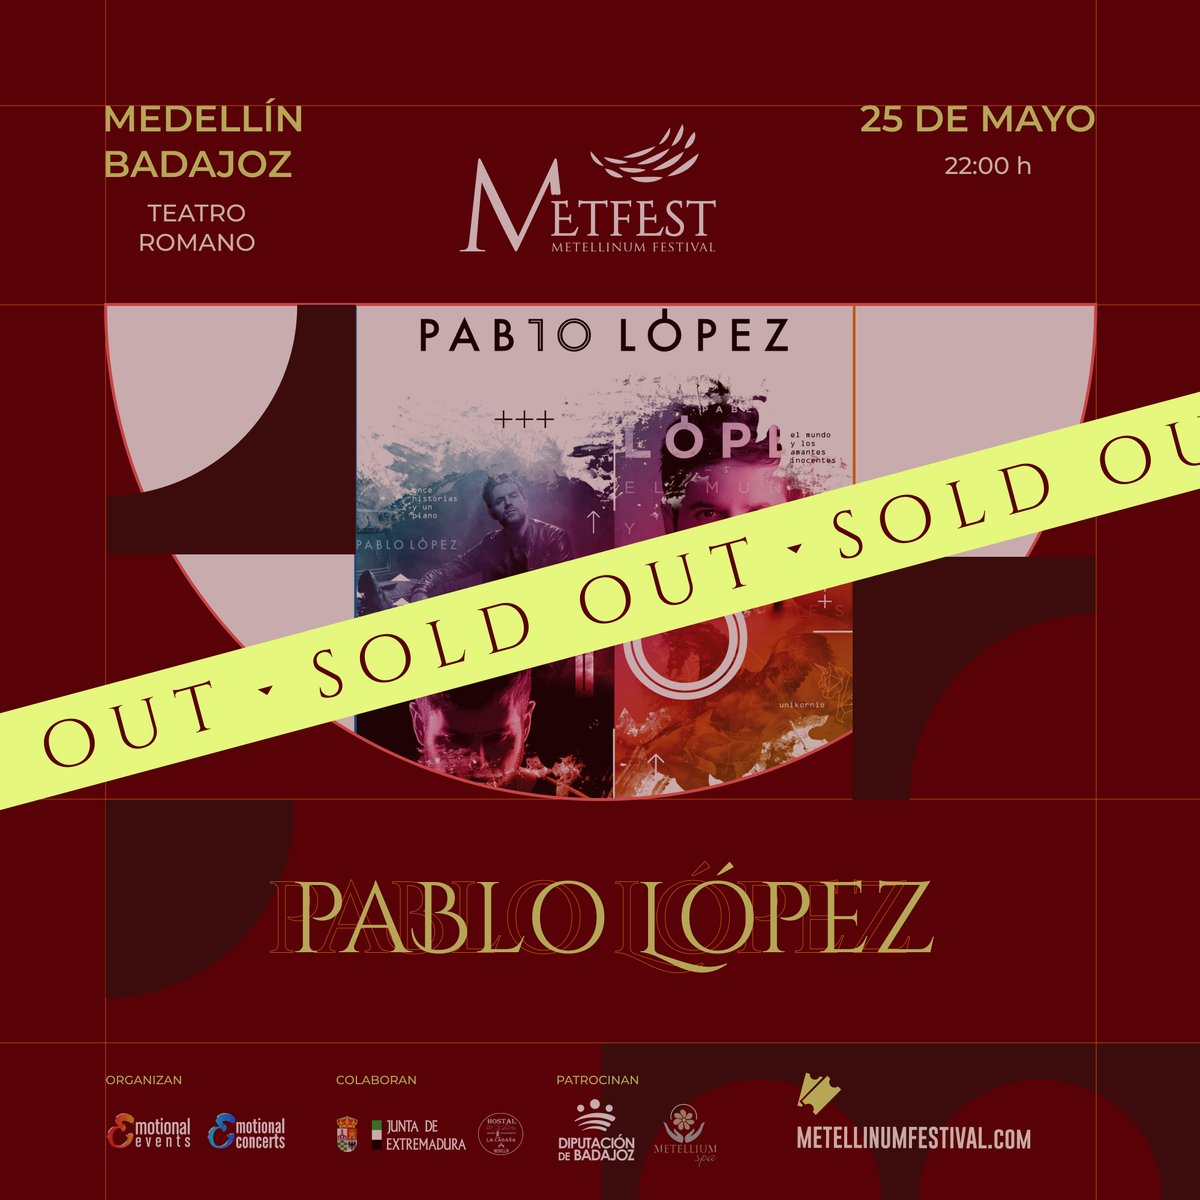 🎉 ¡Pablo López logra hacer SOLD OUT en su concierto del 25 de mayo!🎉 No aguantamos las ganas de que llegue el día de poder disfrutar de sus mejores canciones en el maravilloso Teatro Romano de Medellín, Badajoz 🤩 #pablolopez #medellinextremadura #metfest #emotionalevents